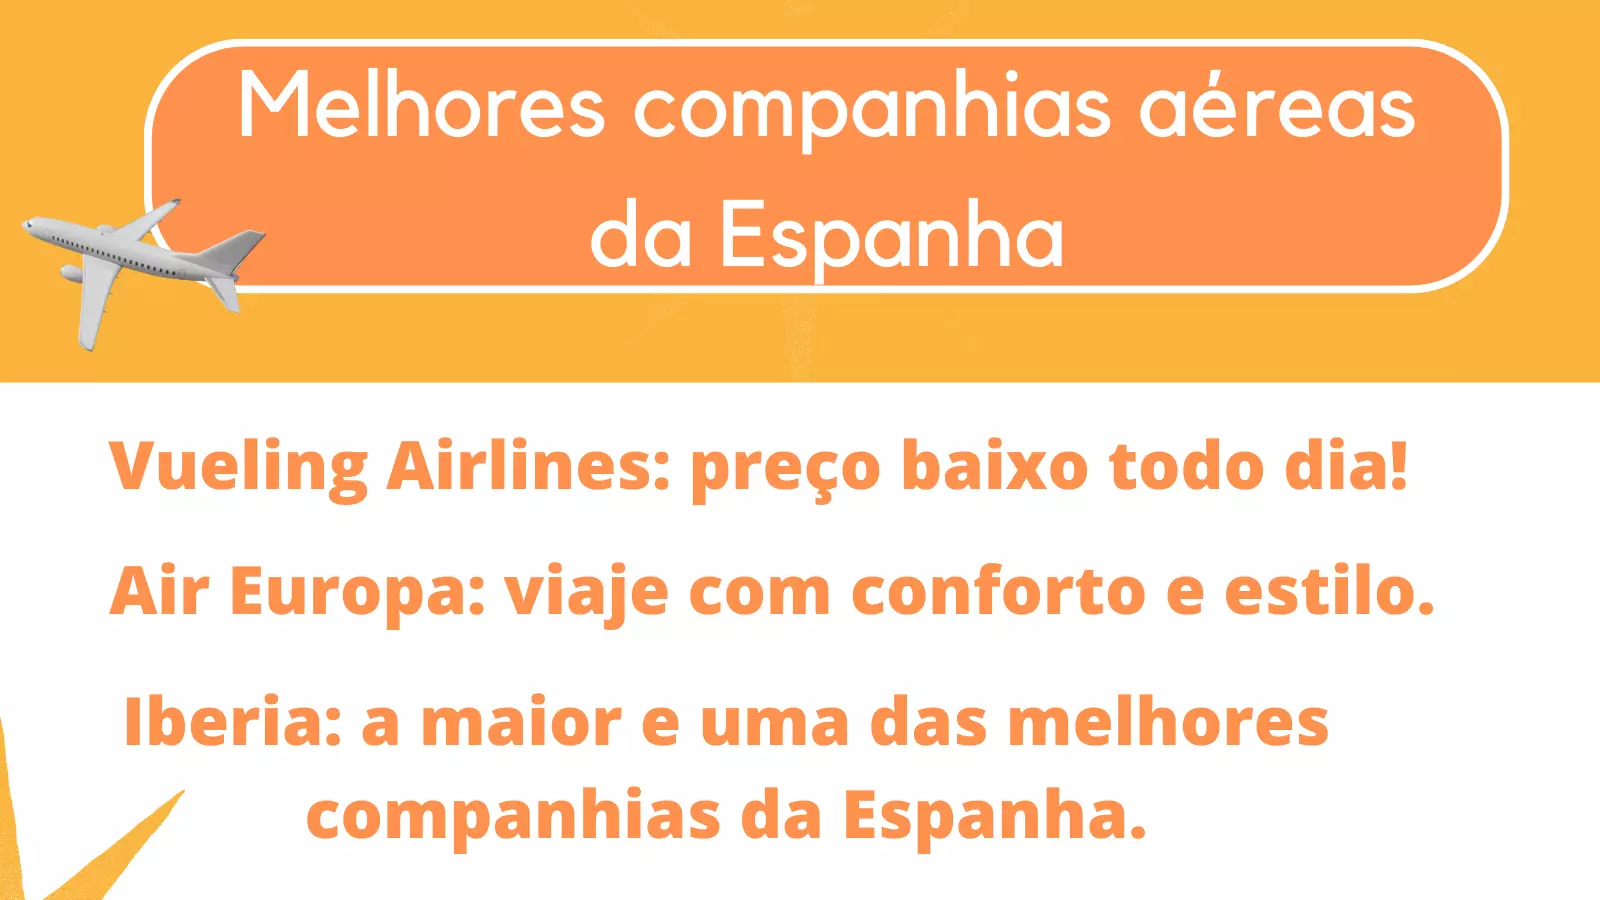 As melhores companhias aéreas da Espanha: Vueling Airlines, Air Europa e Iberia